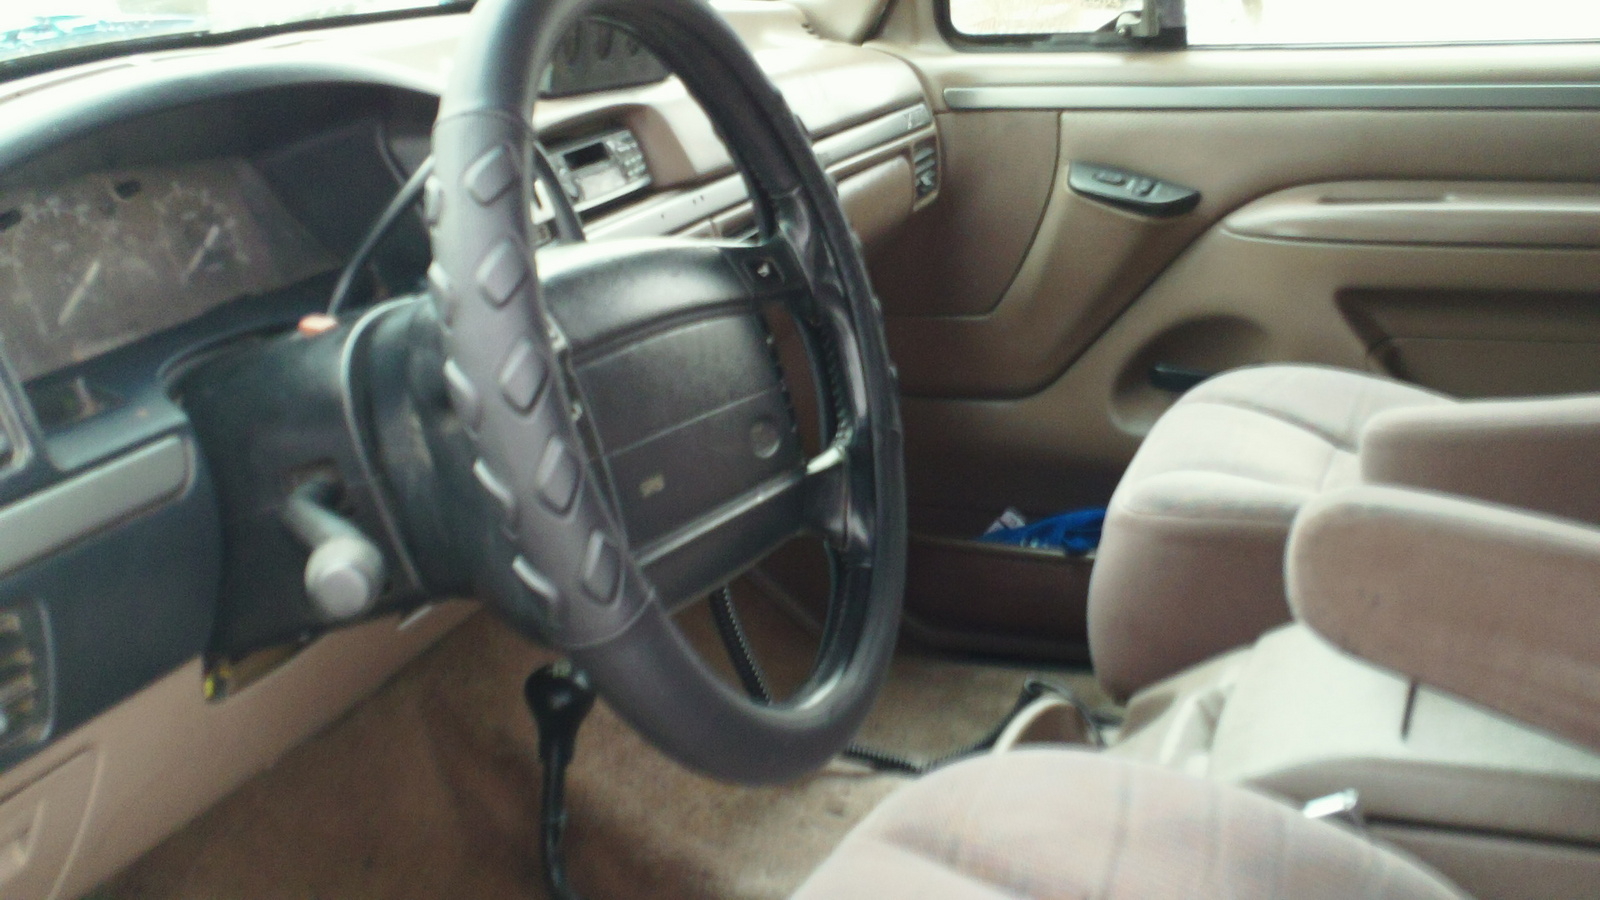 1995 Ford bronco interior trim #2